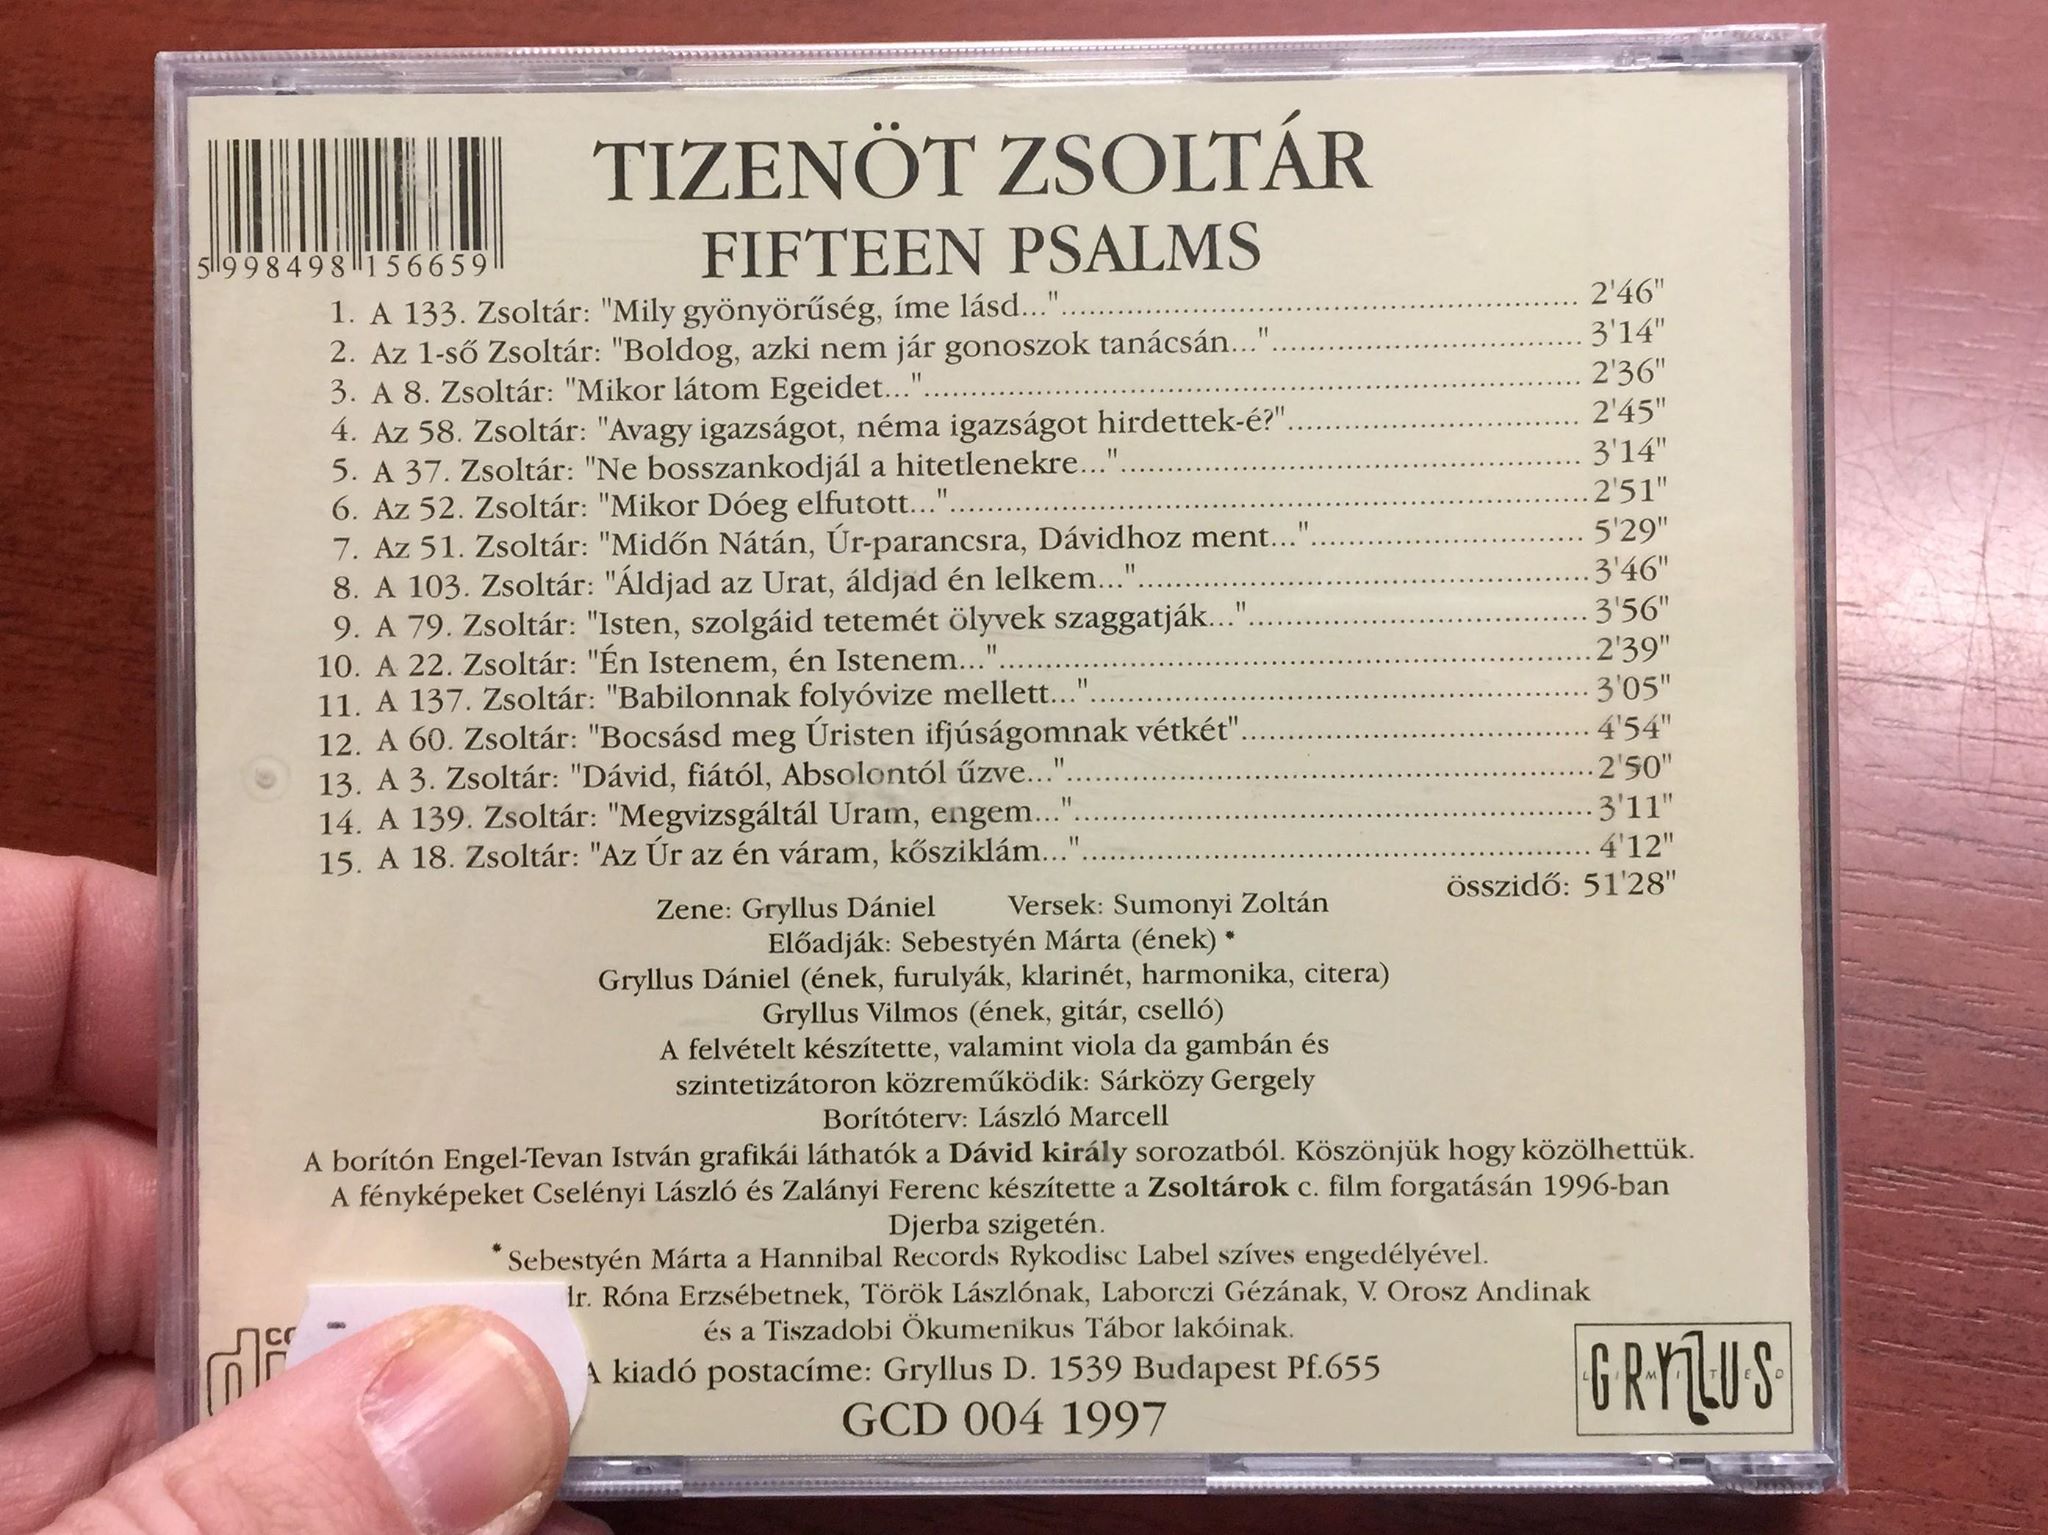 tizen-t-zsolt-r-fifteen-psalms-gryllus-d-niel-sumonyi-zolt-n-gcd004-2-.jpg